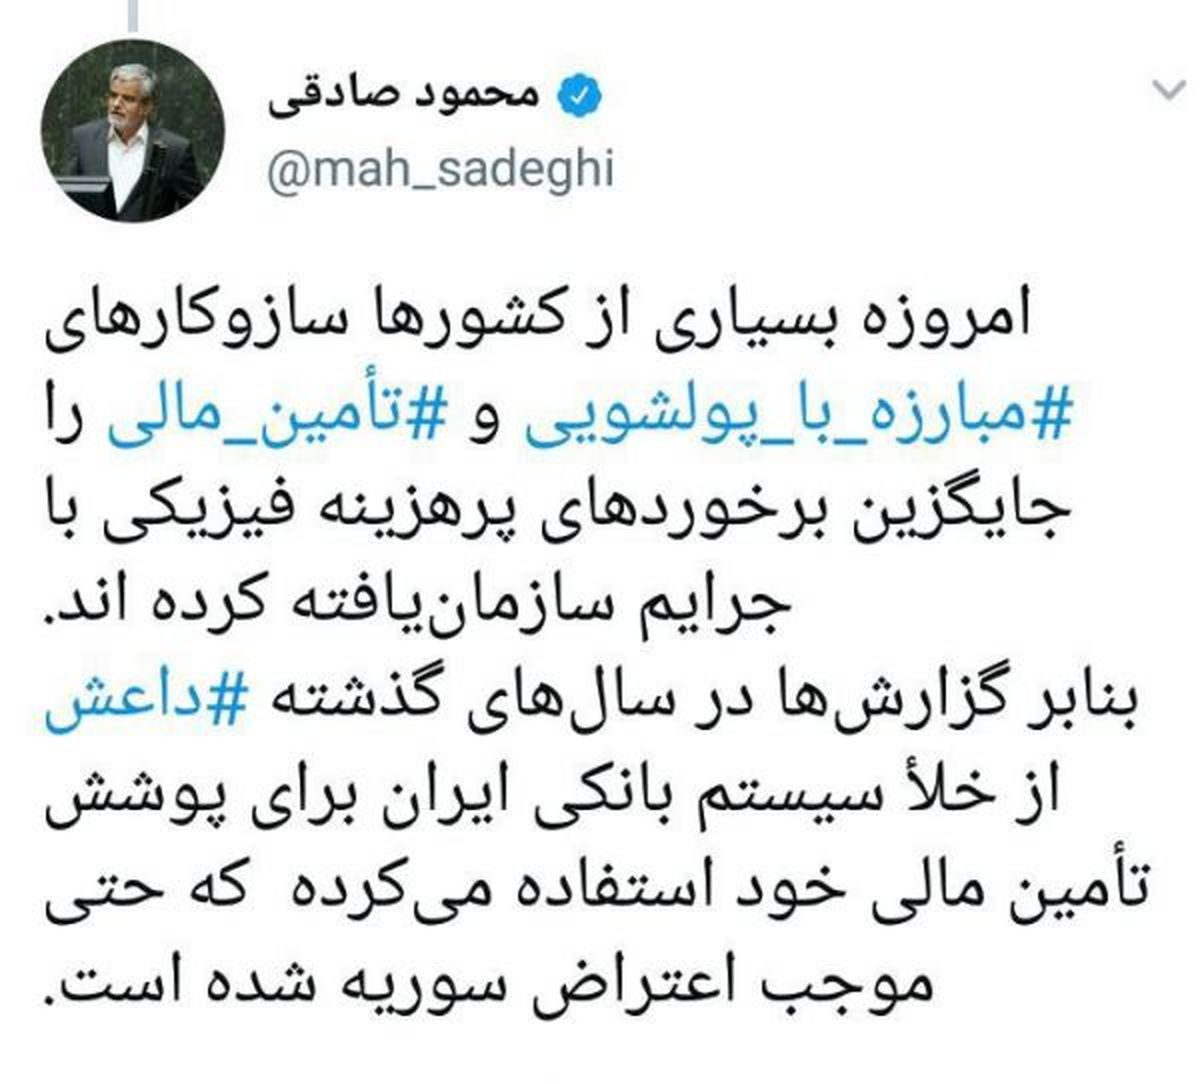 توییت مجدد محمود صادقی درباره علت مخالفت با FATF / داعش از خلاء سیستم بانکی ایران استفاده کرده